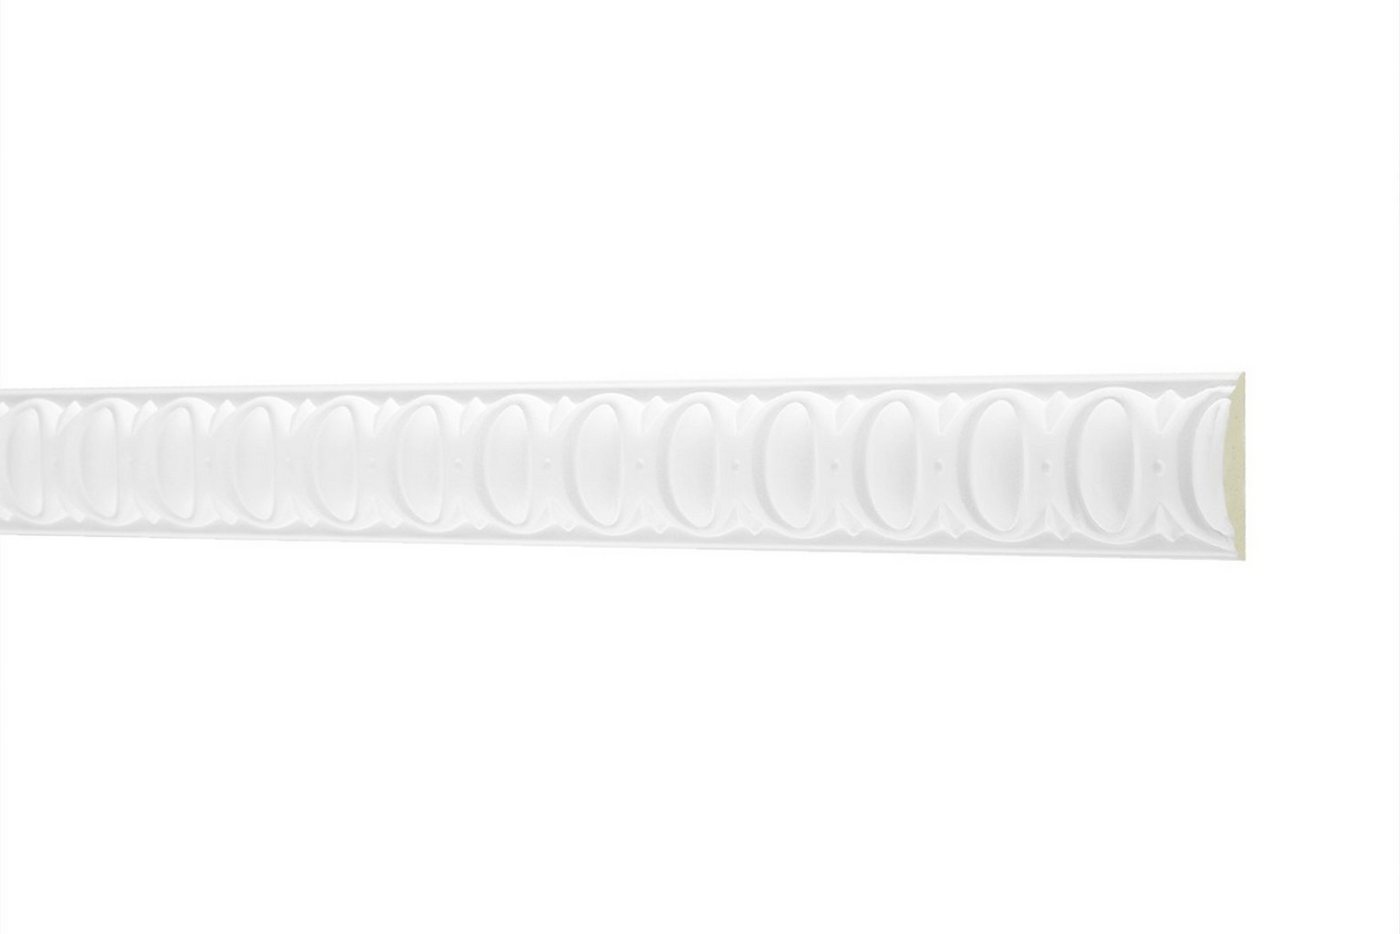 Hexim Perfect Stuckleiste AC220, Wand- und Deckenumrandung aus PU - 2 Meter Flachleiste, hart & stoßfest, weißes Zierprofil - Wandleiste vorgrundiert von Hexim Perfect